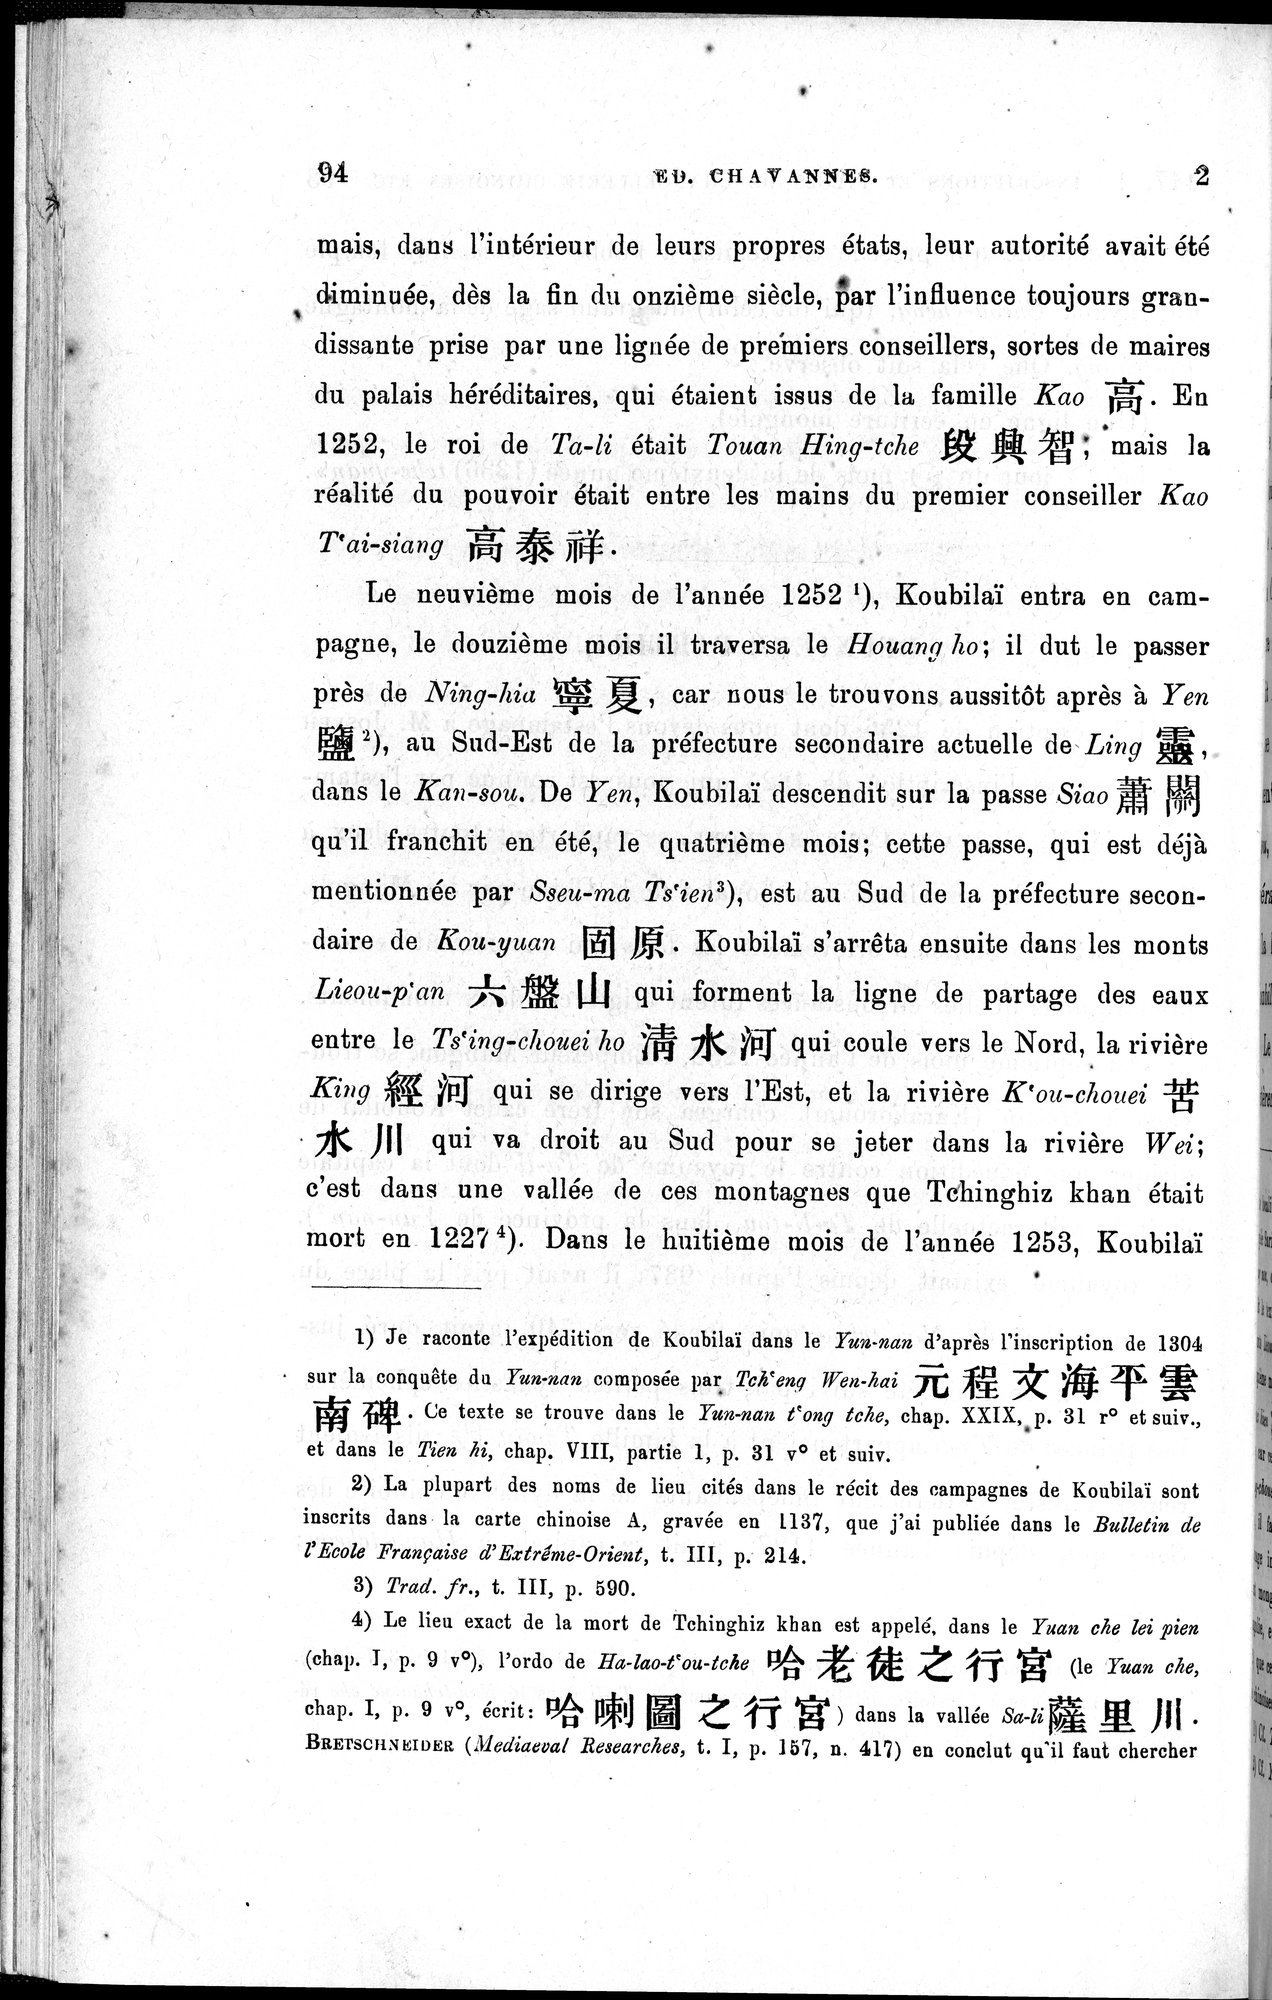 Inscriptions et pièces de Chancellerie Chinoises de l'époque mongol : vol.1 / Page 110 (Grayscale High Resolution Image)